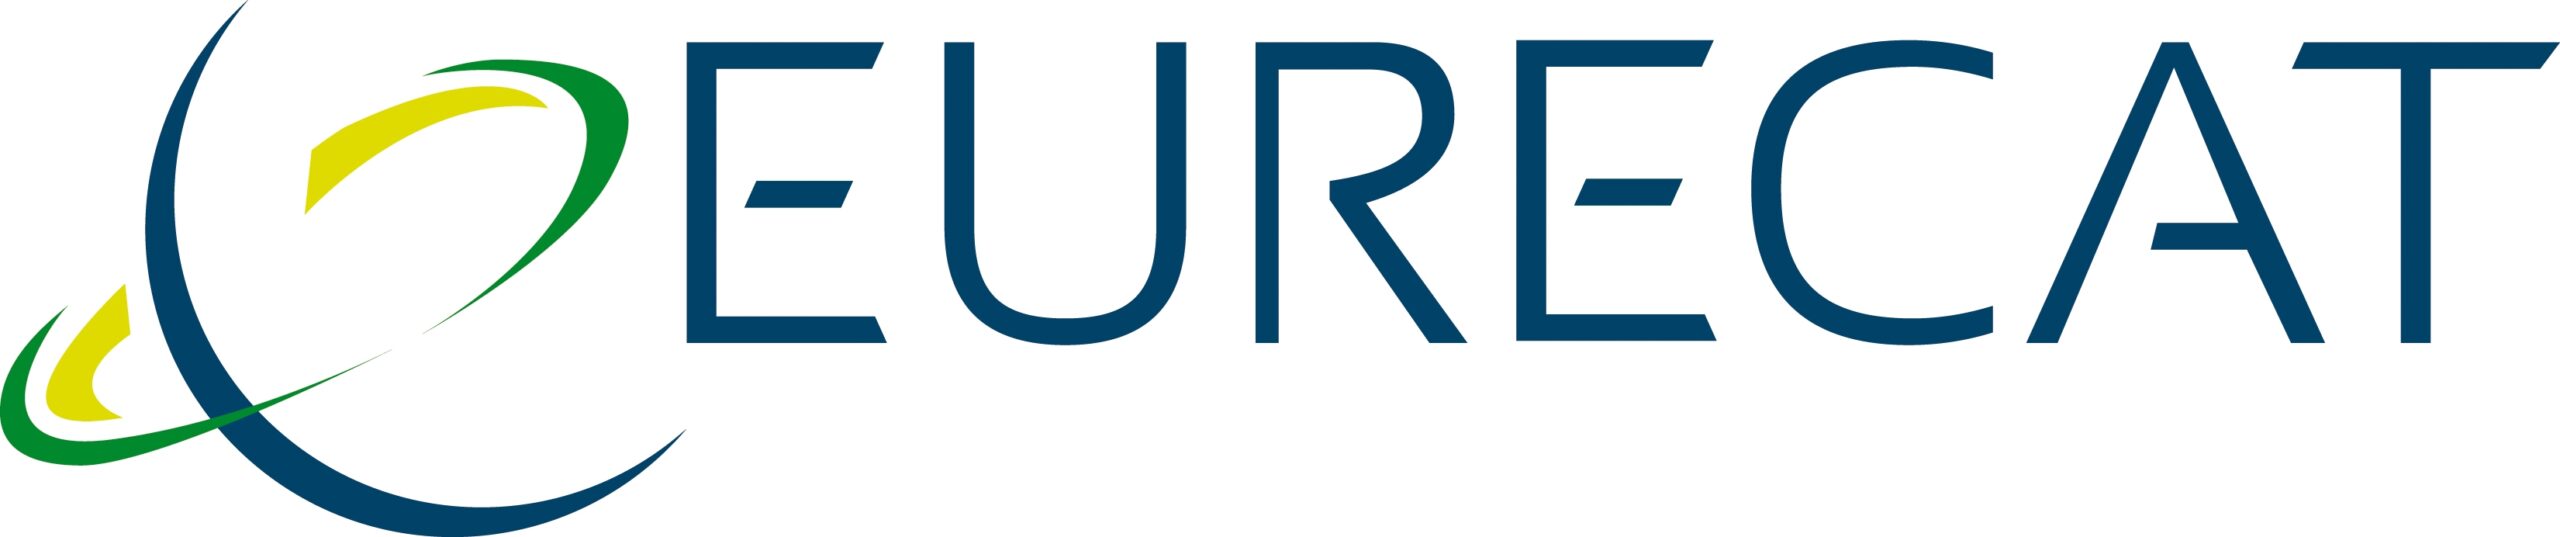 Logo-Eurecat